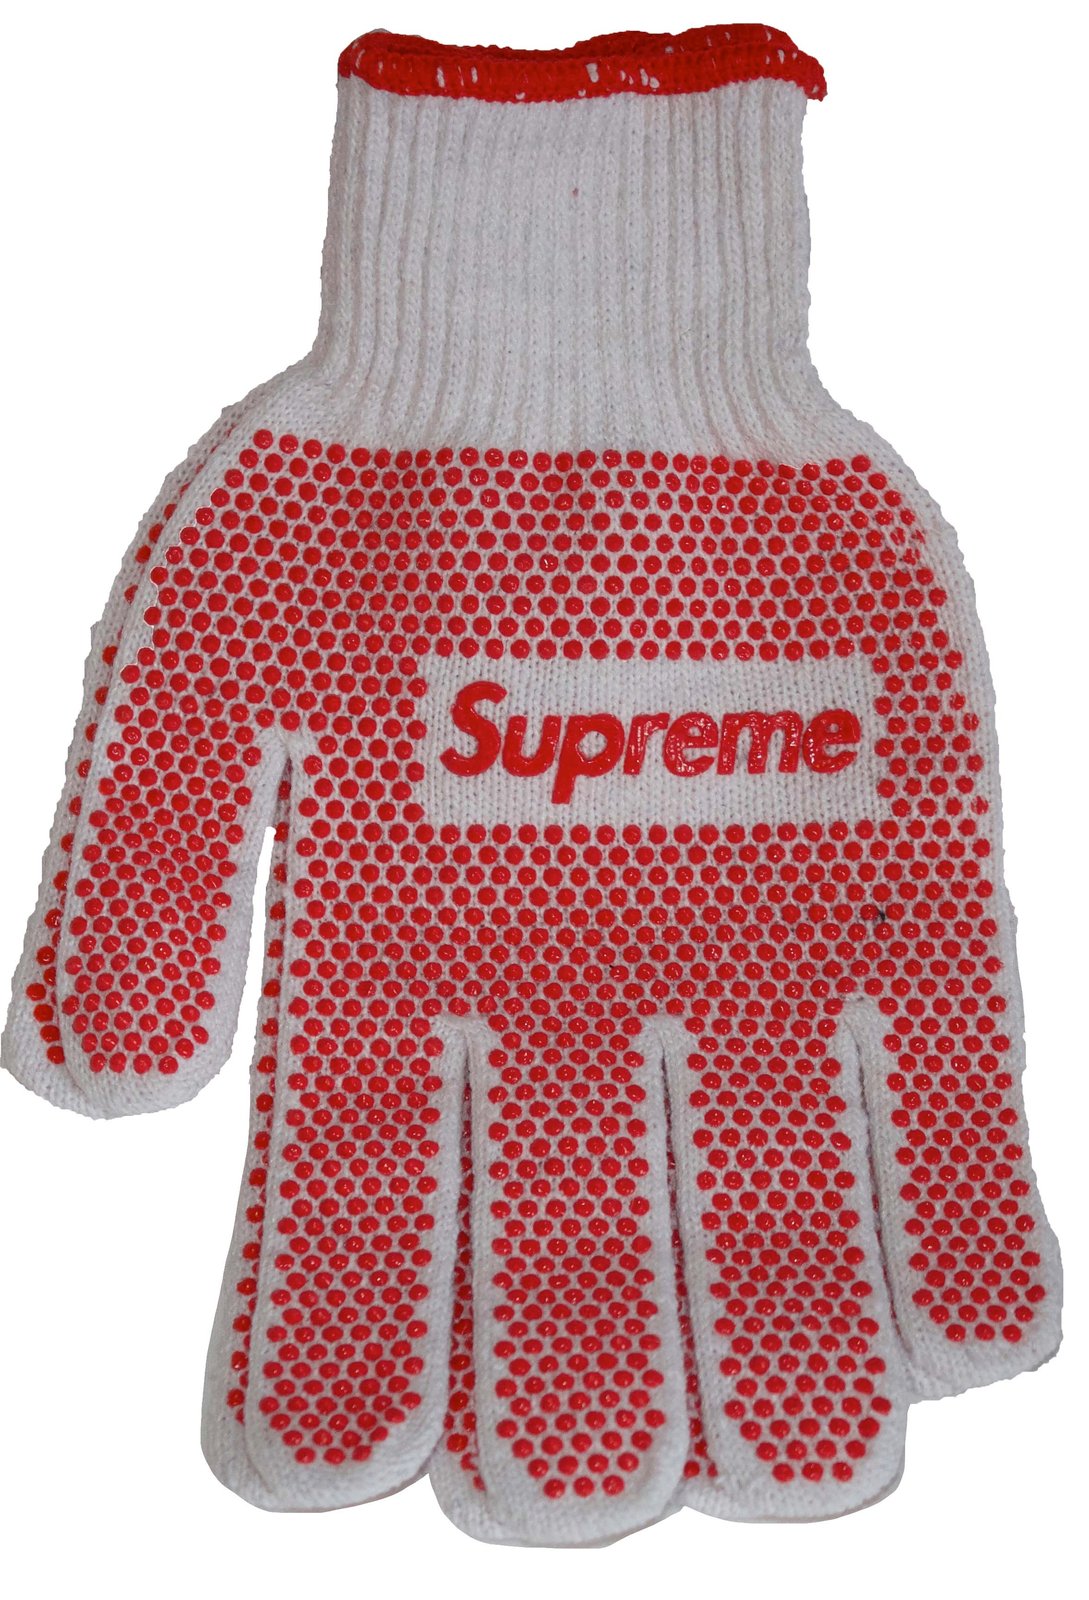 Supreme Work Gloves | theendinc